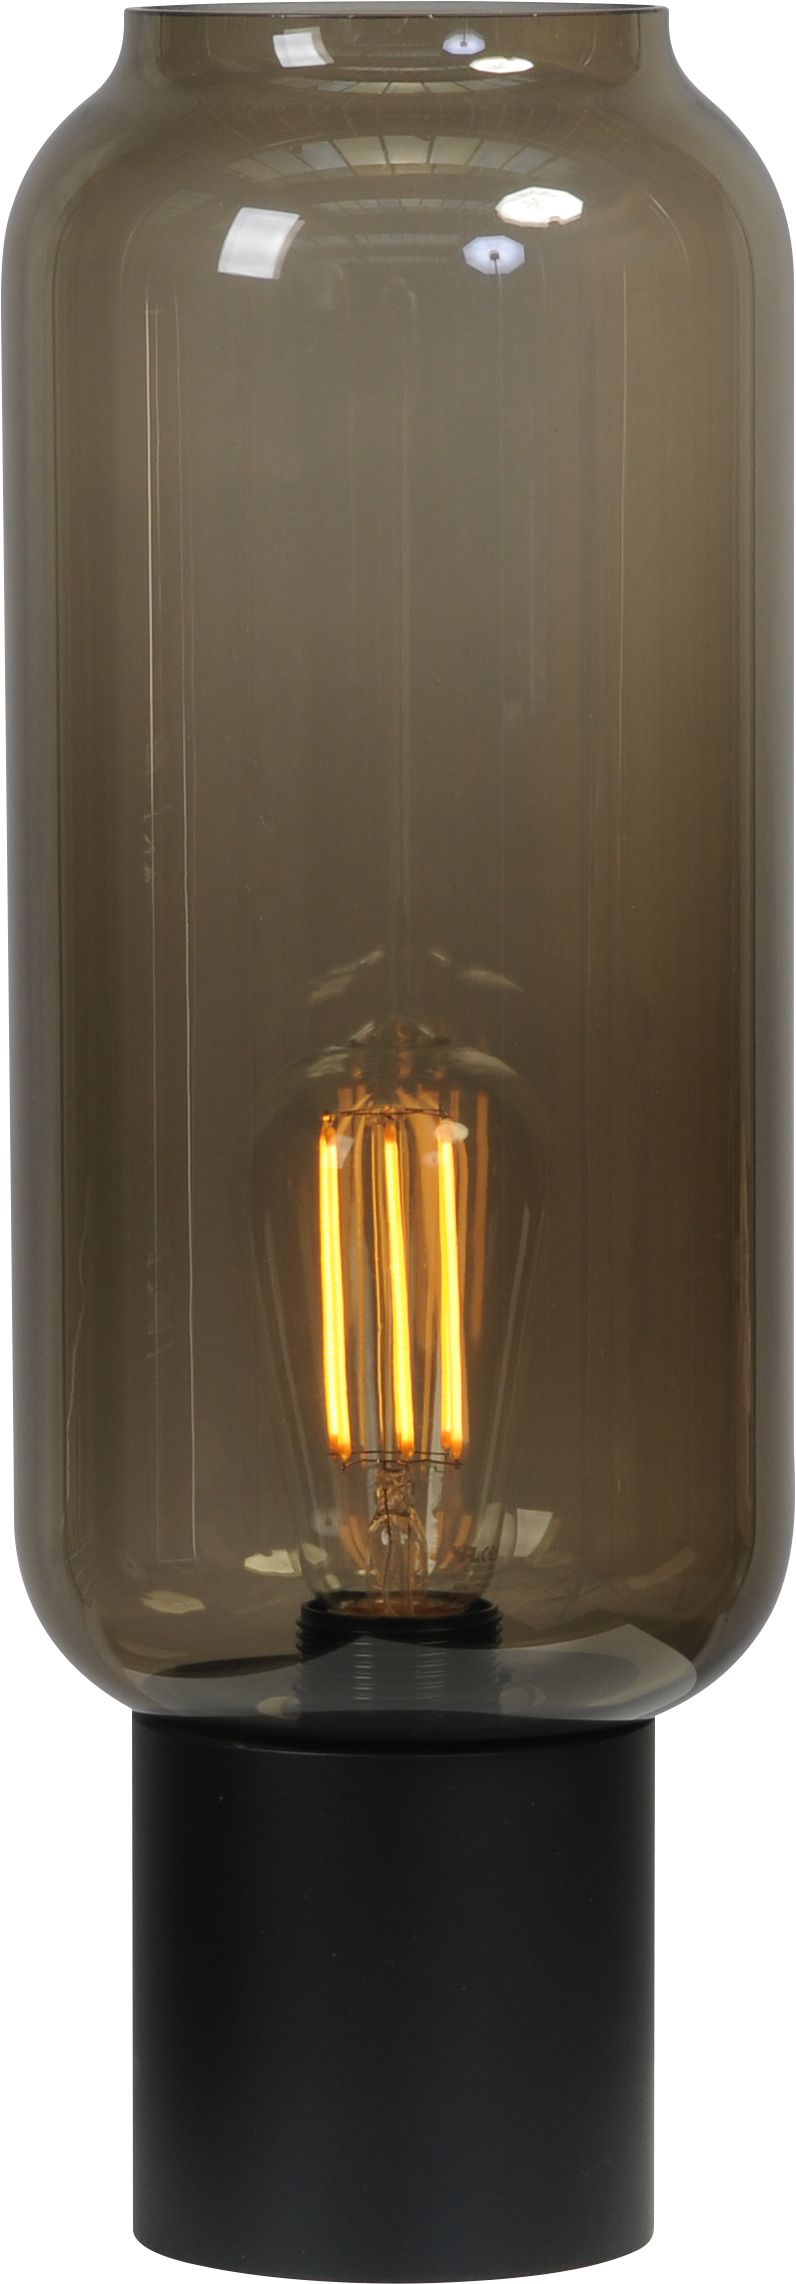 Tischlampe Schwarz Glas Schirm 43 cm hoch Wohnzimmer